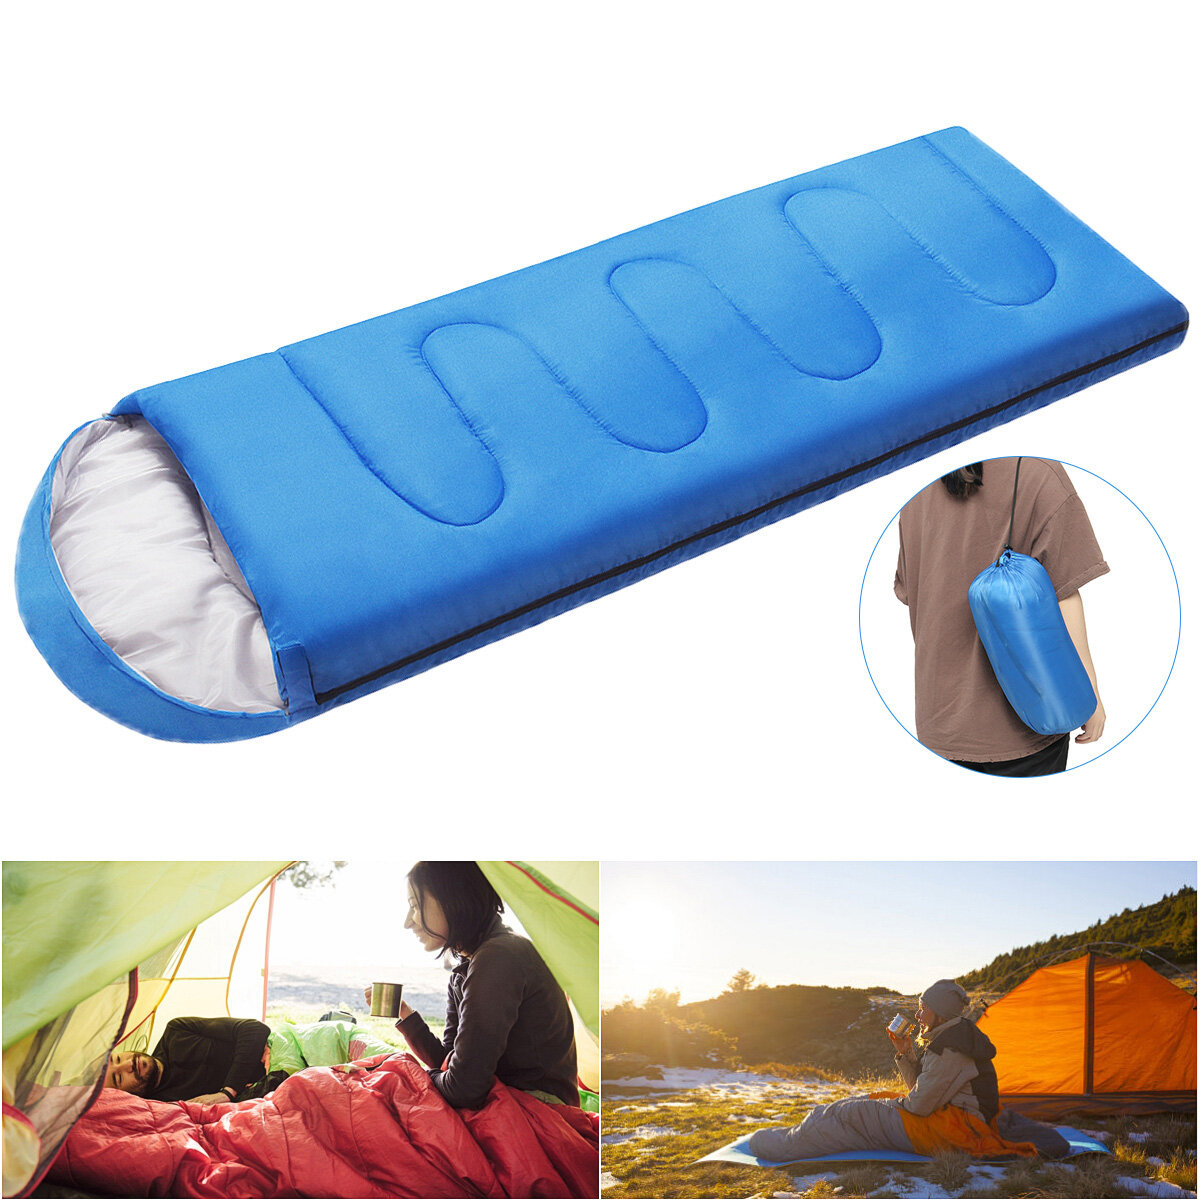 210x75CM Tek Kişi Uyuyan Çanta Outdoor Su Geçirmez Kampçılık Uyku Çanta Sonbahar / Kış Fermuarlı Yürüyüş Kampçılık Yatak